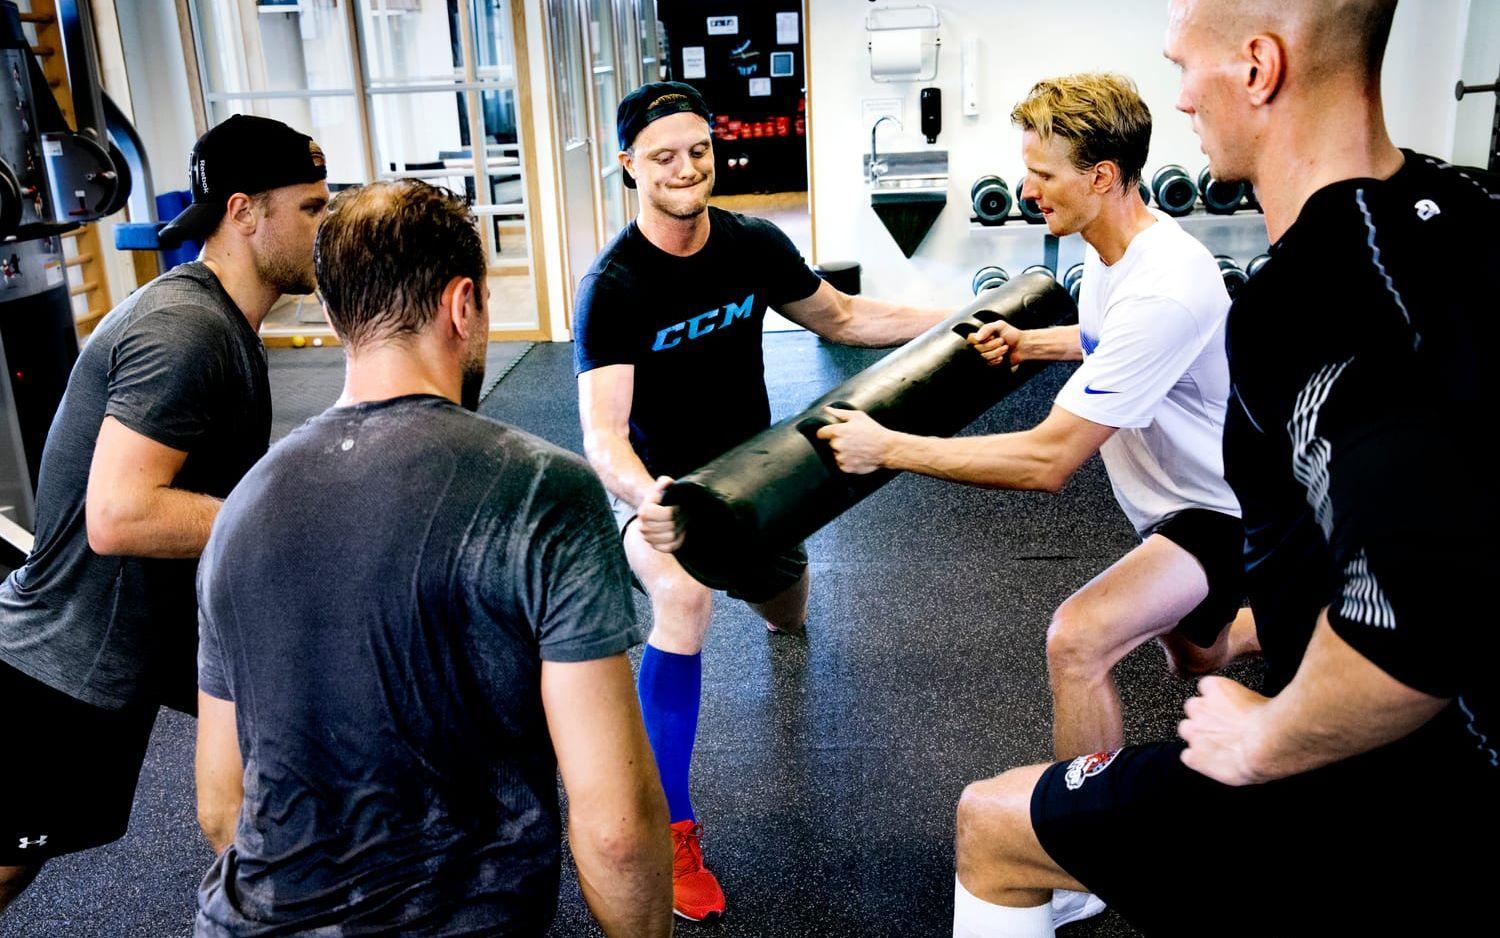 "Det är riktigt nice att kunna träna ihop" Bild: Per Wahlberg.